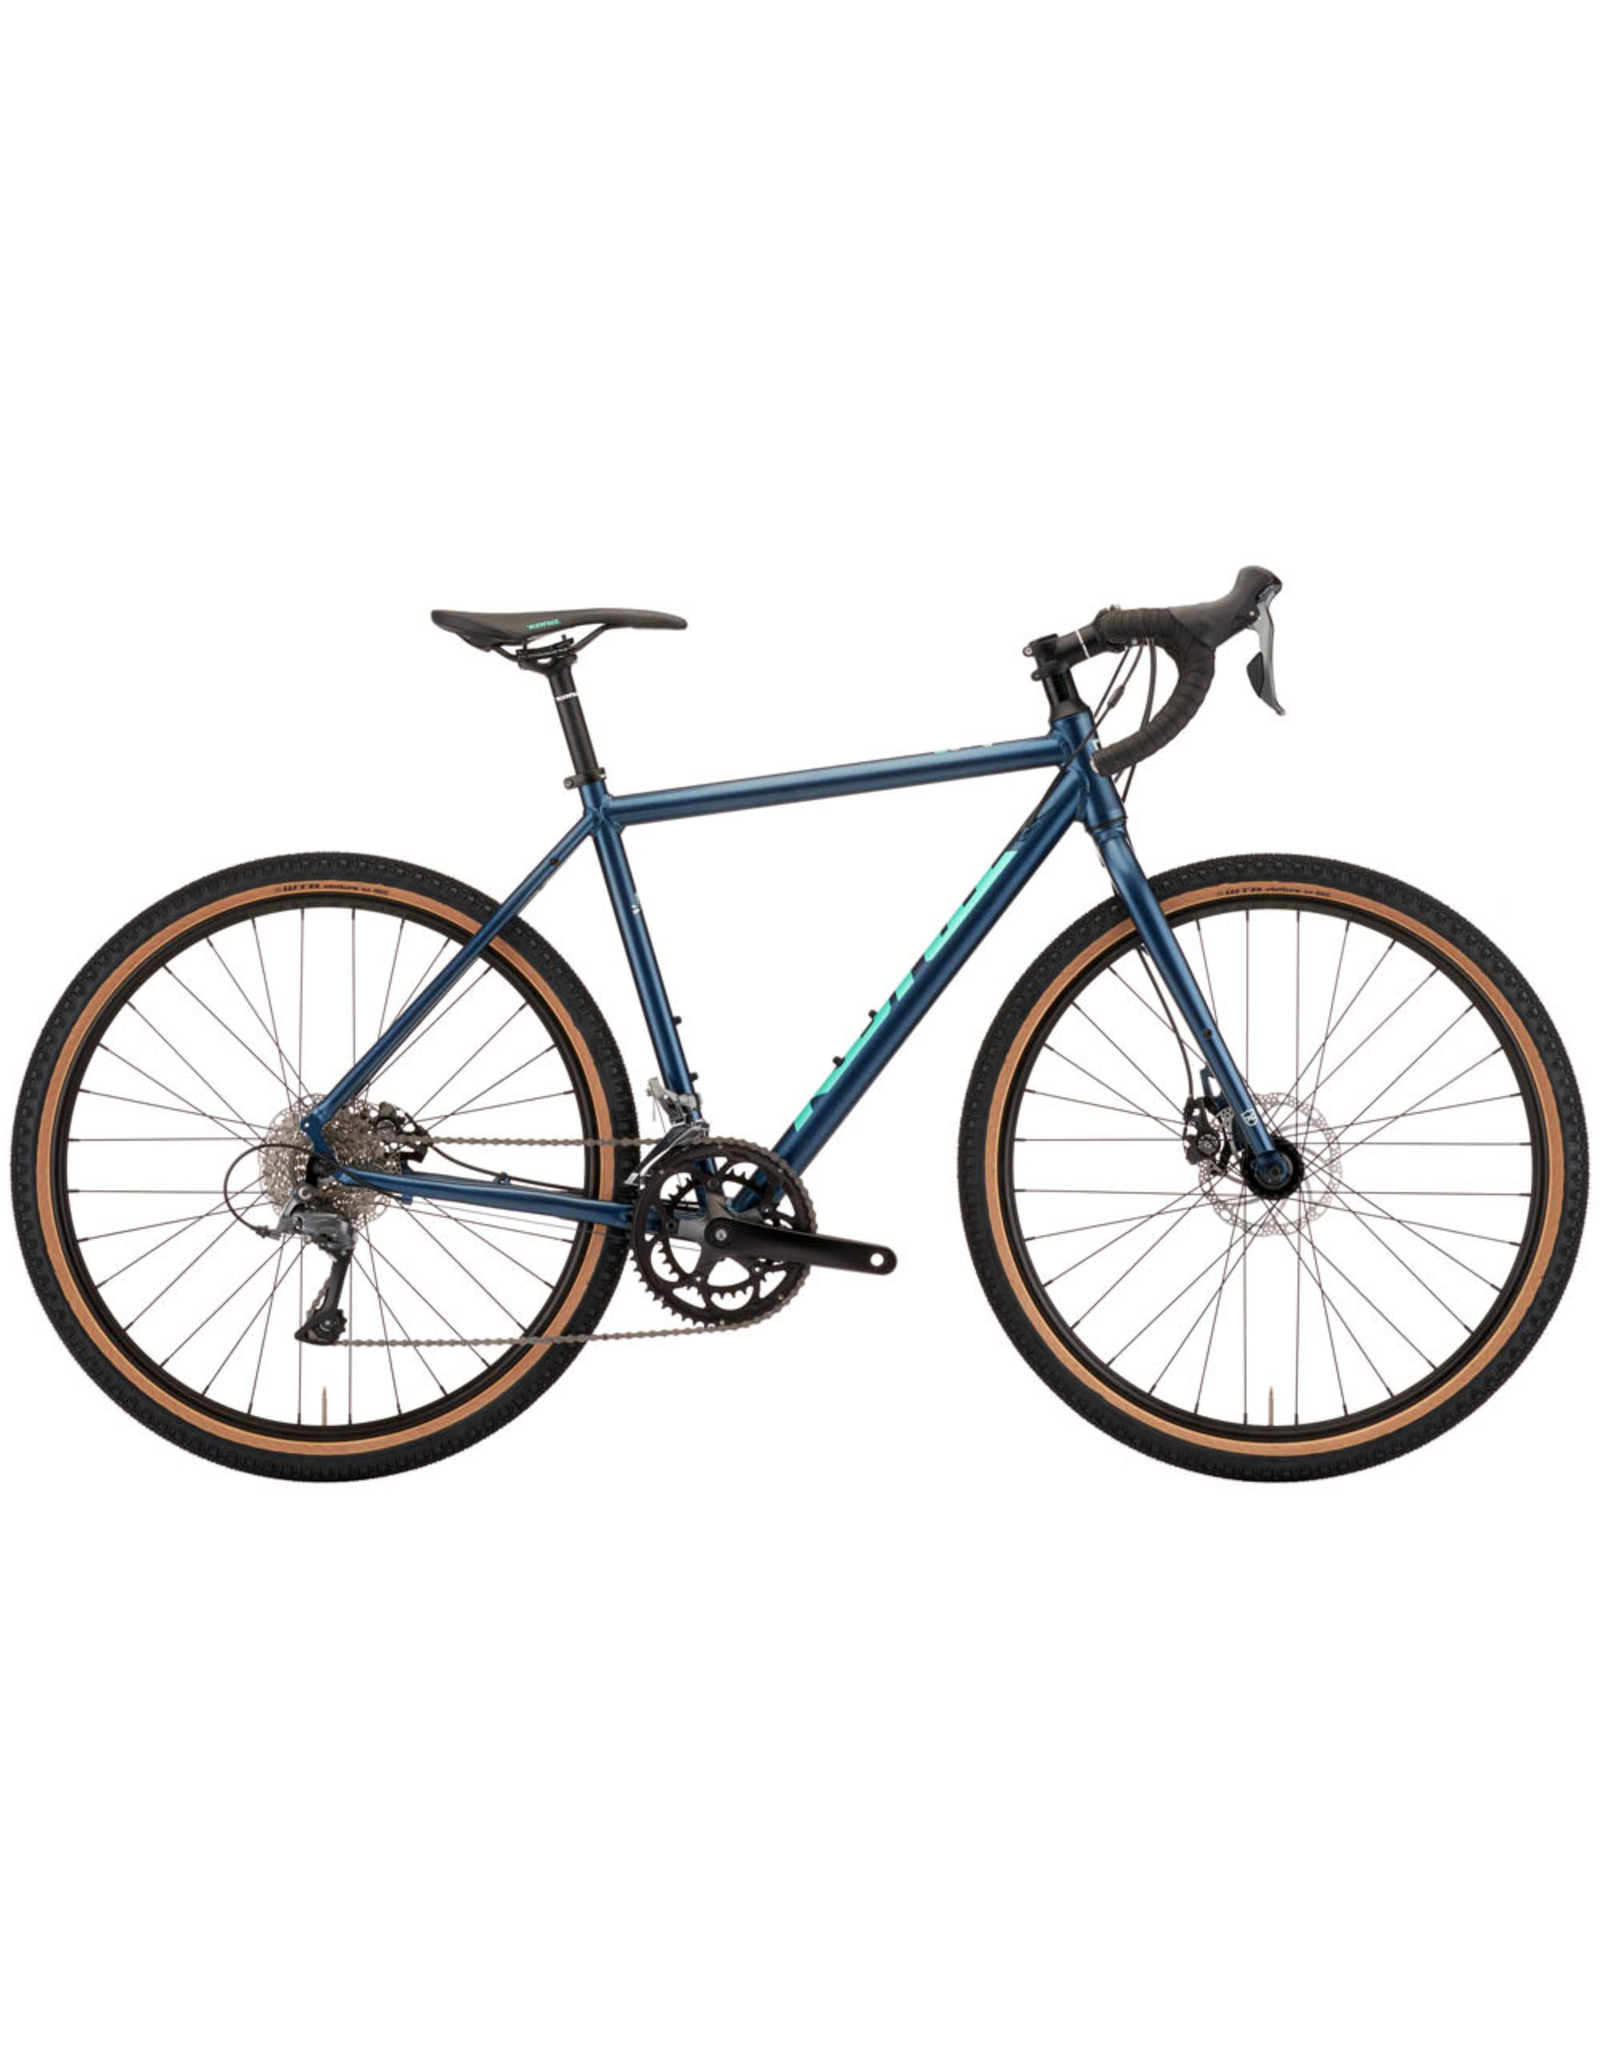 Kona bikes Rove AL 650, bleu satiné 54cm 2022